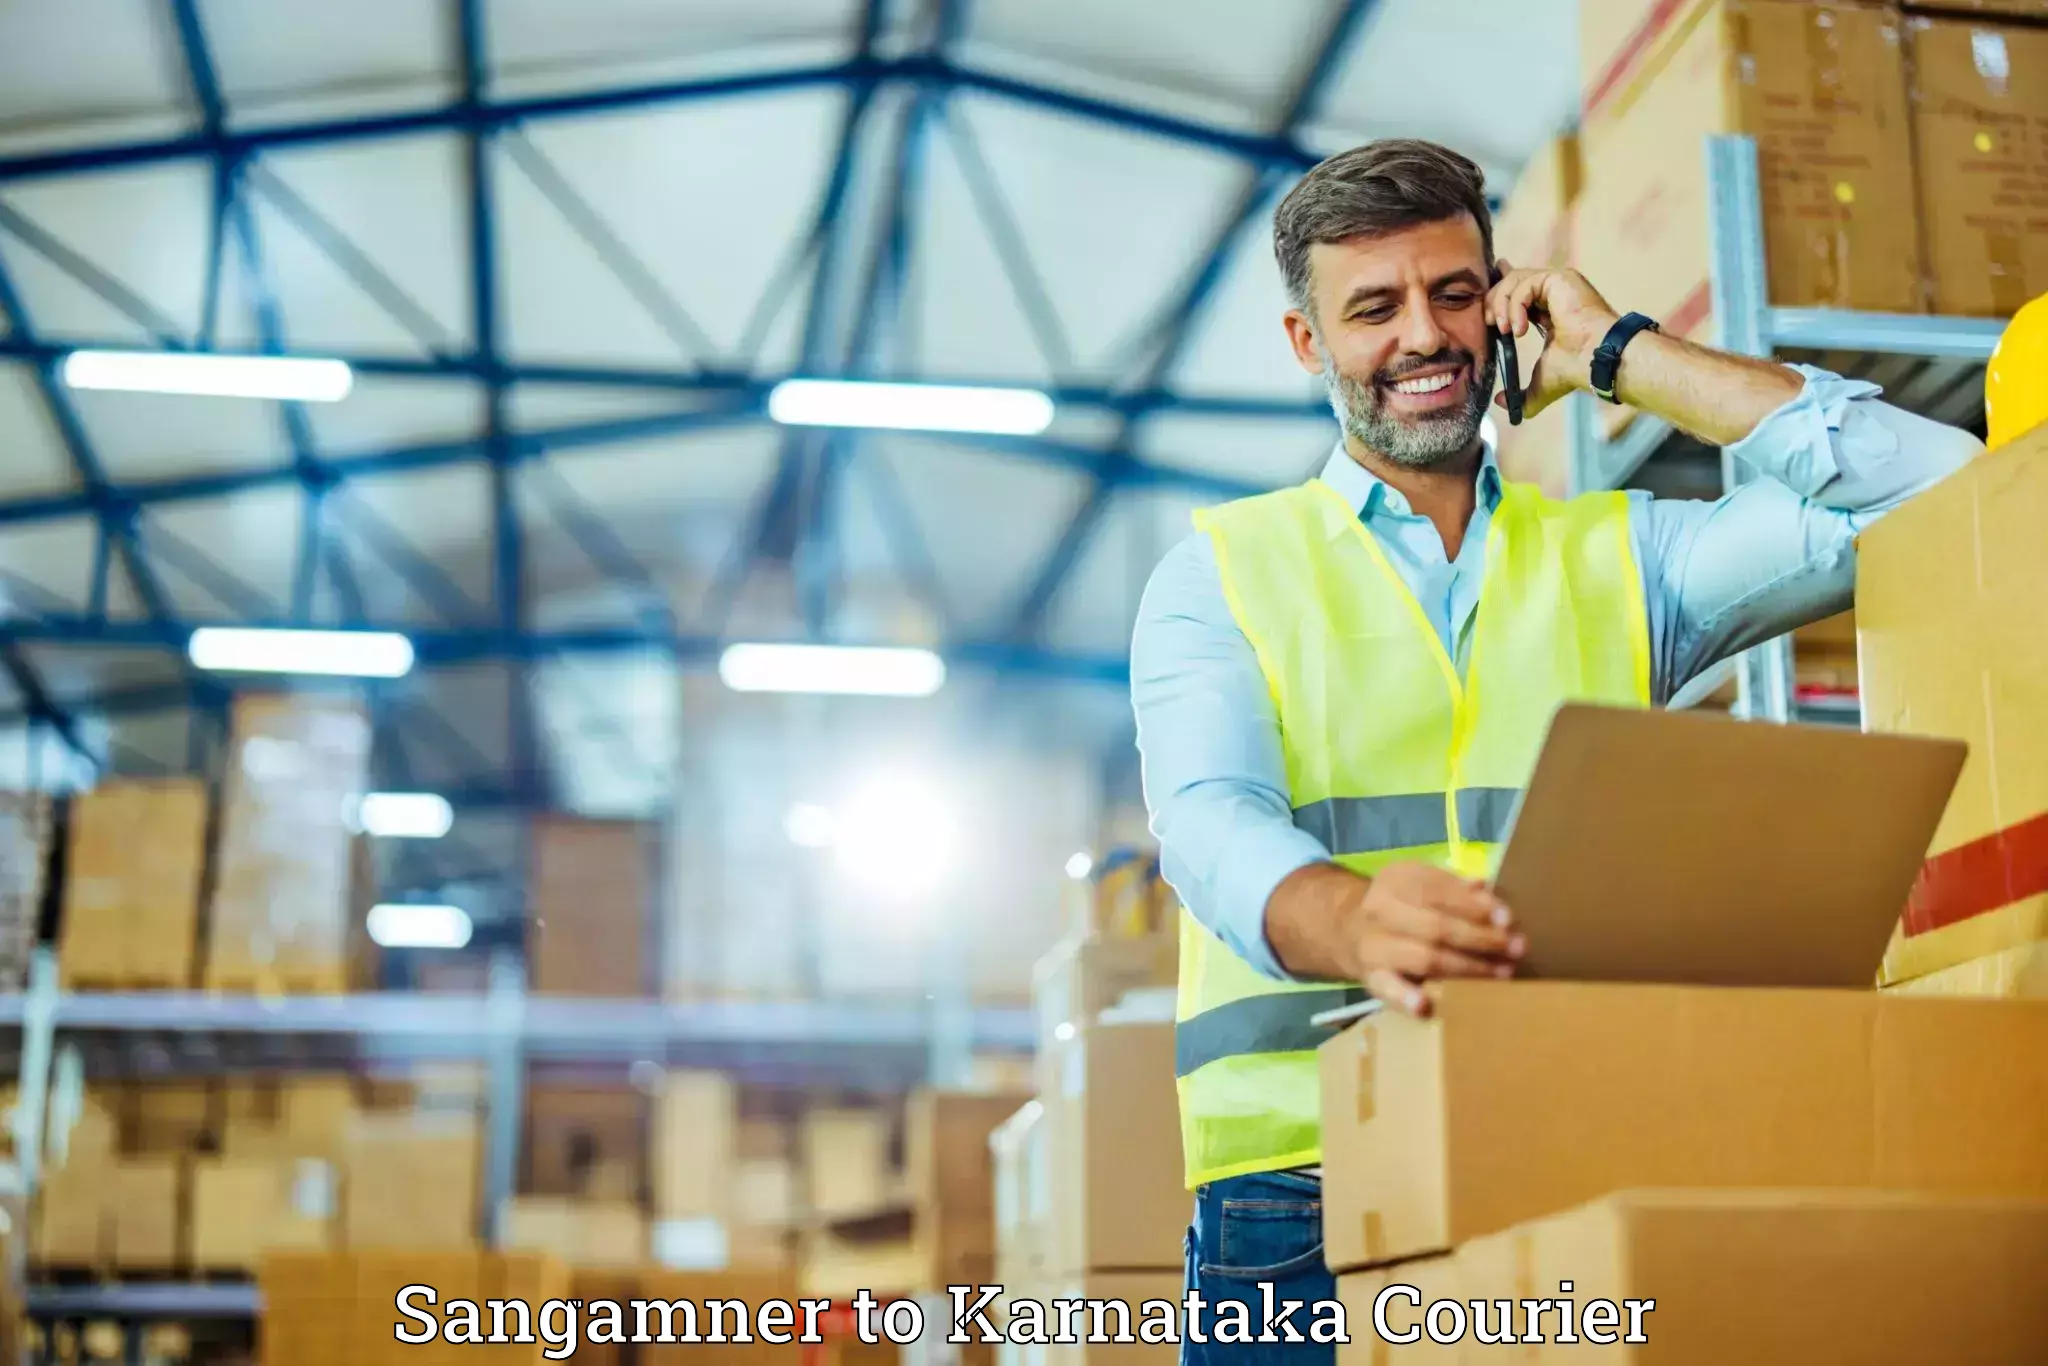 Luggage shipment tracking Sangamner to Belgaum